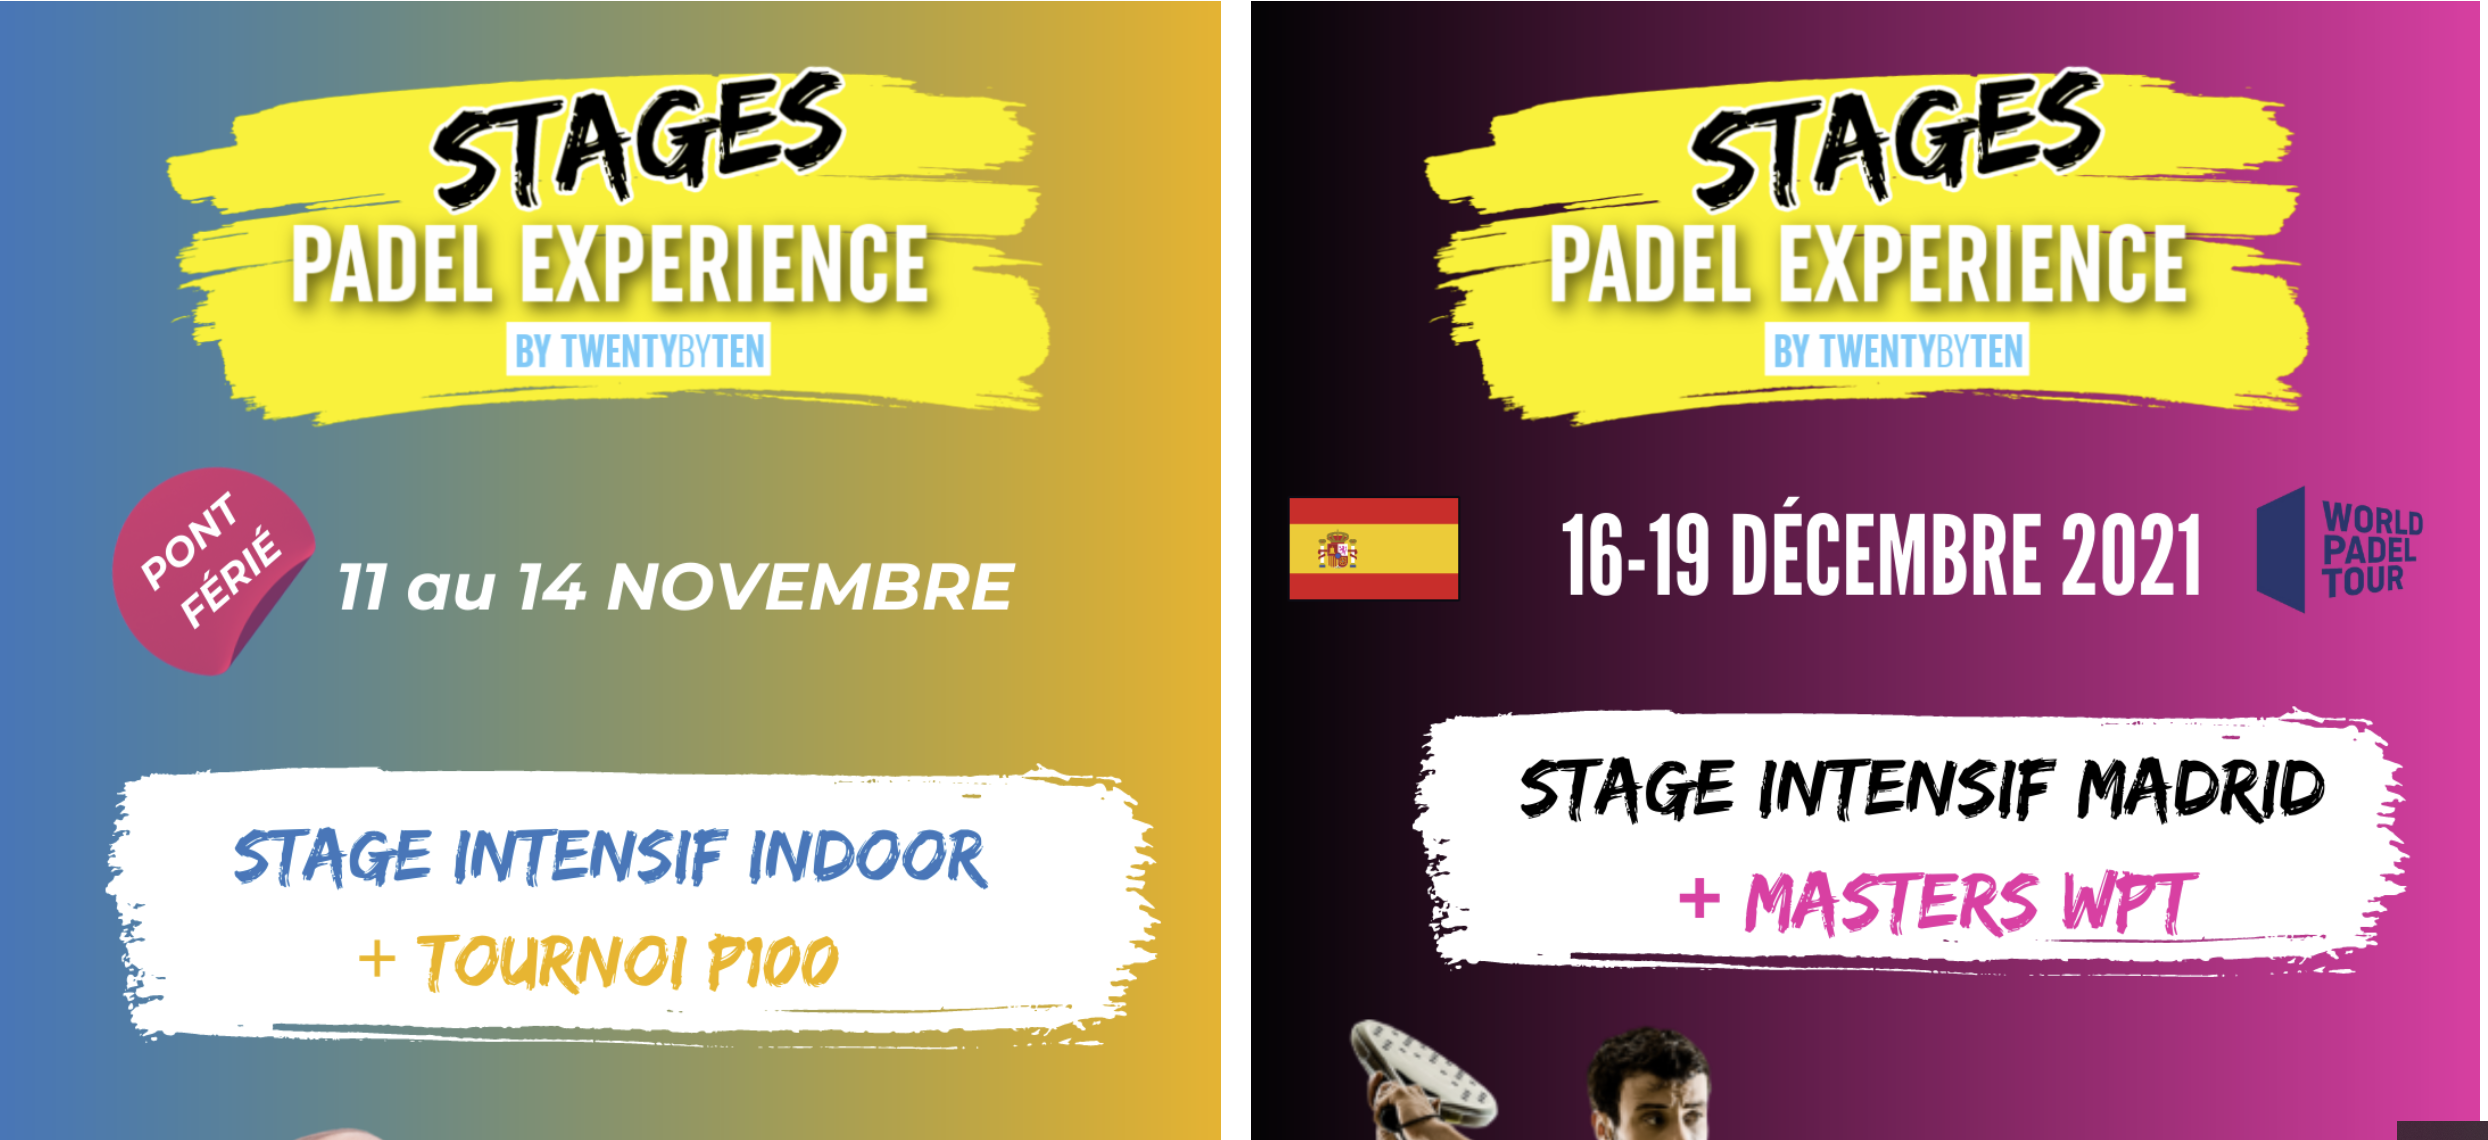 Padel Erfarenhet: 2 praktikplatser padel i Lyon och Madrid